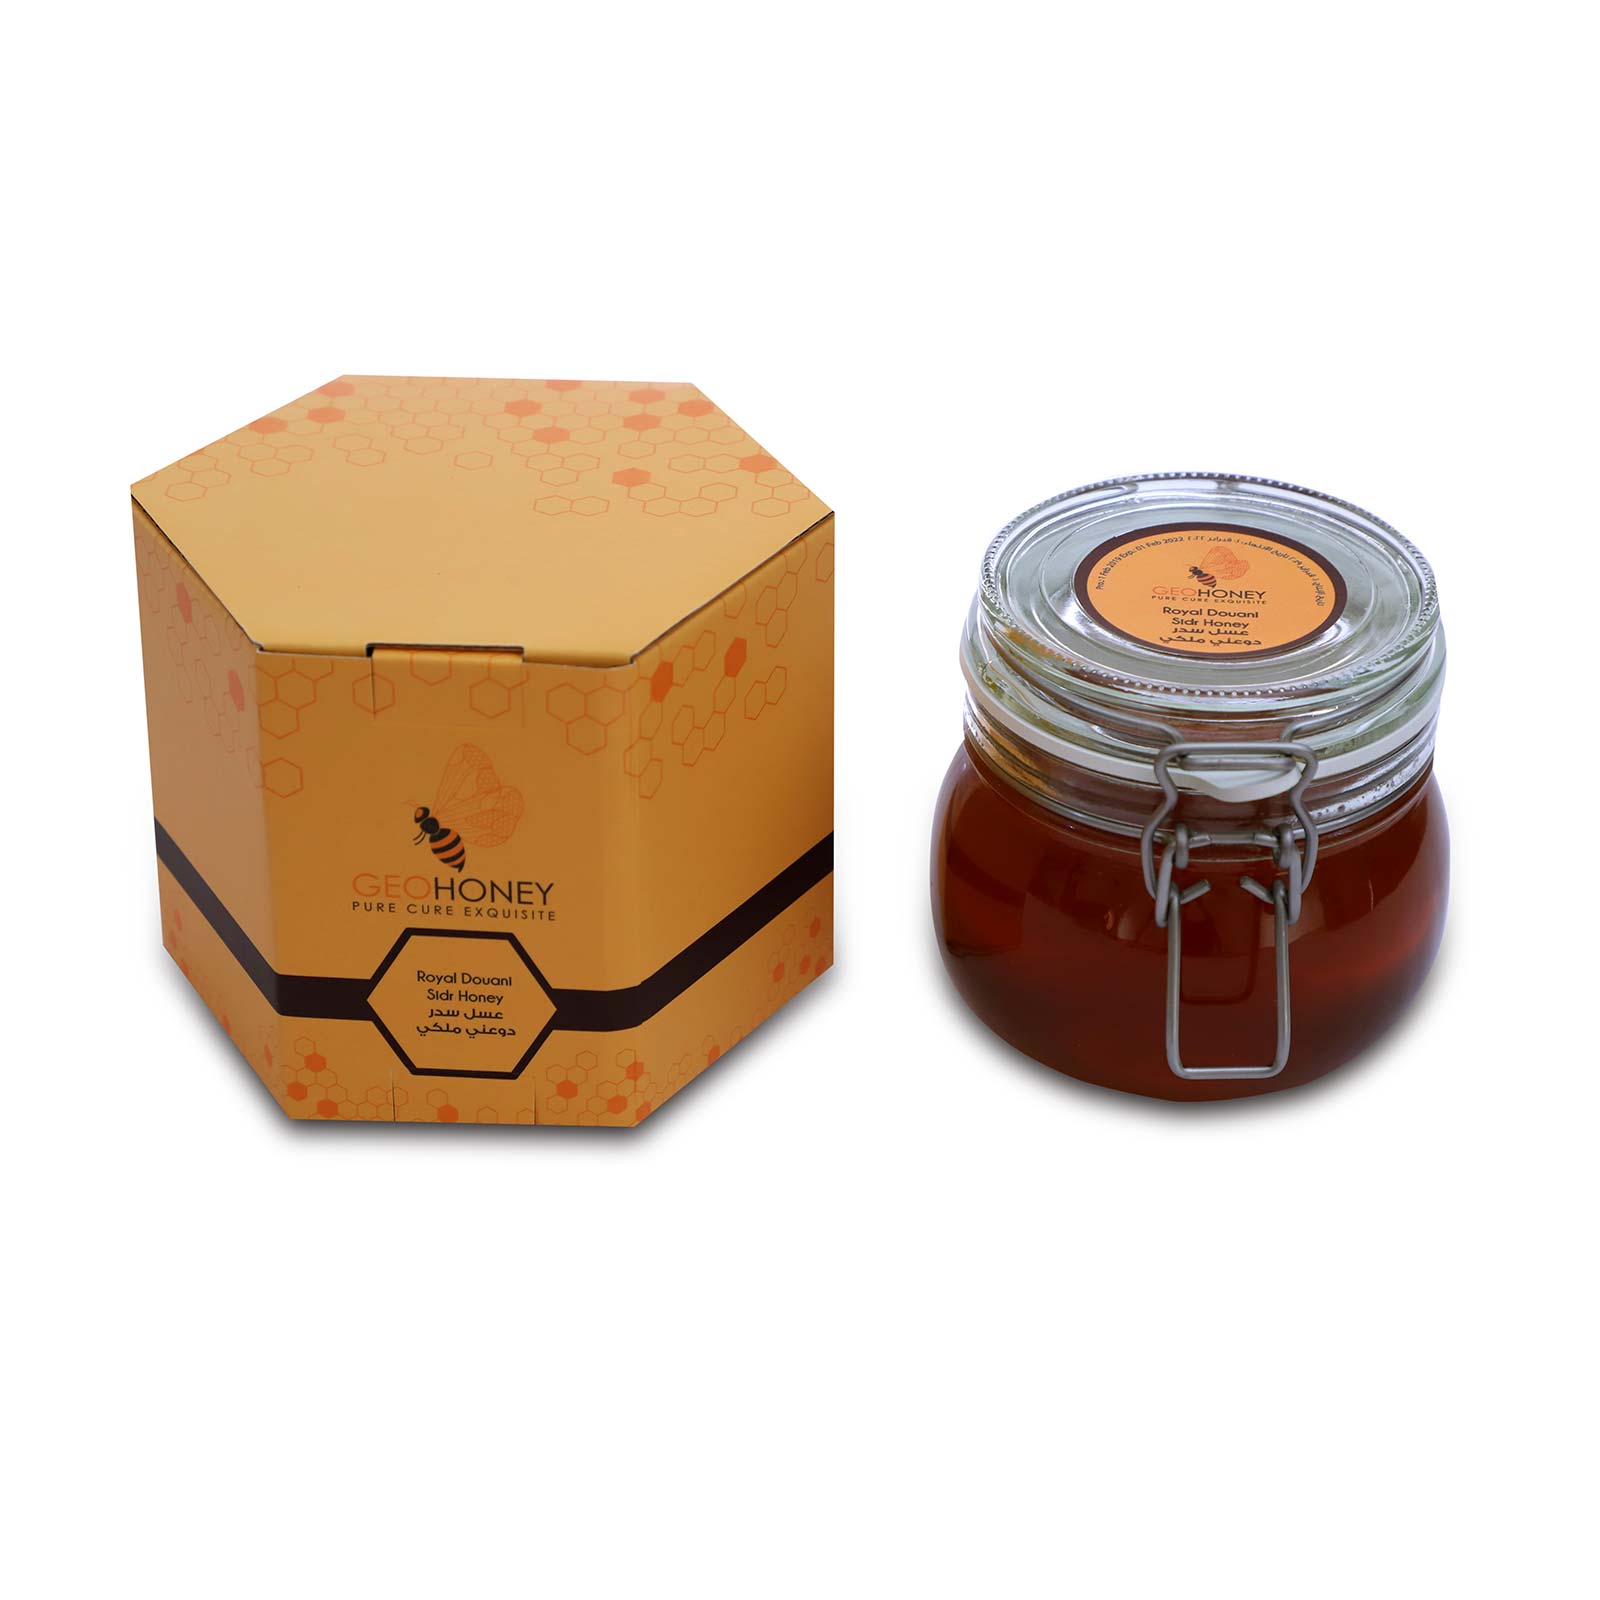 Buy Sidr Doany Honey - 750g.jpg  by geohoney